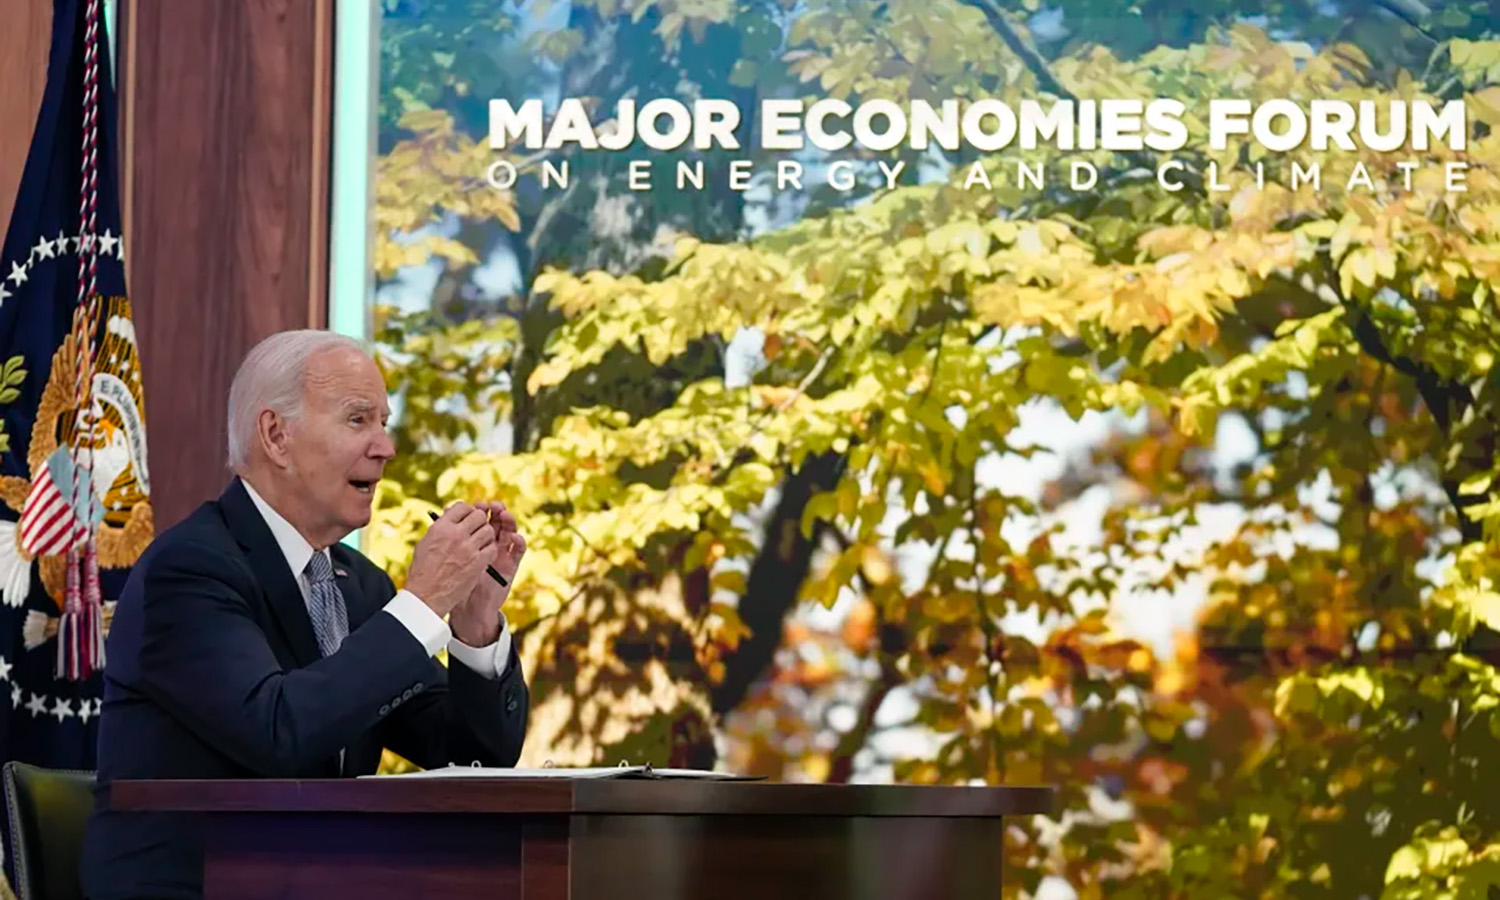 Presidente Biden catalisará ação climática global por meio do Fórum das Grandes Economias sobre Energia e Clima